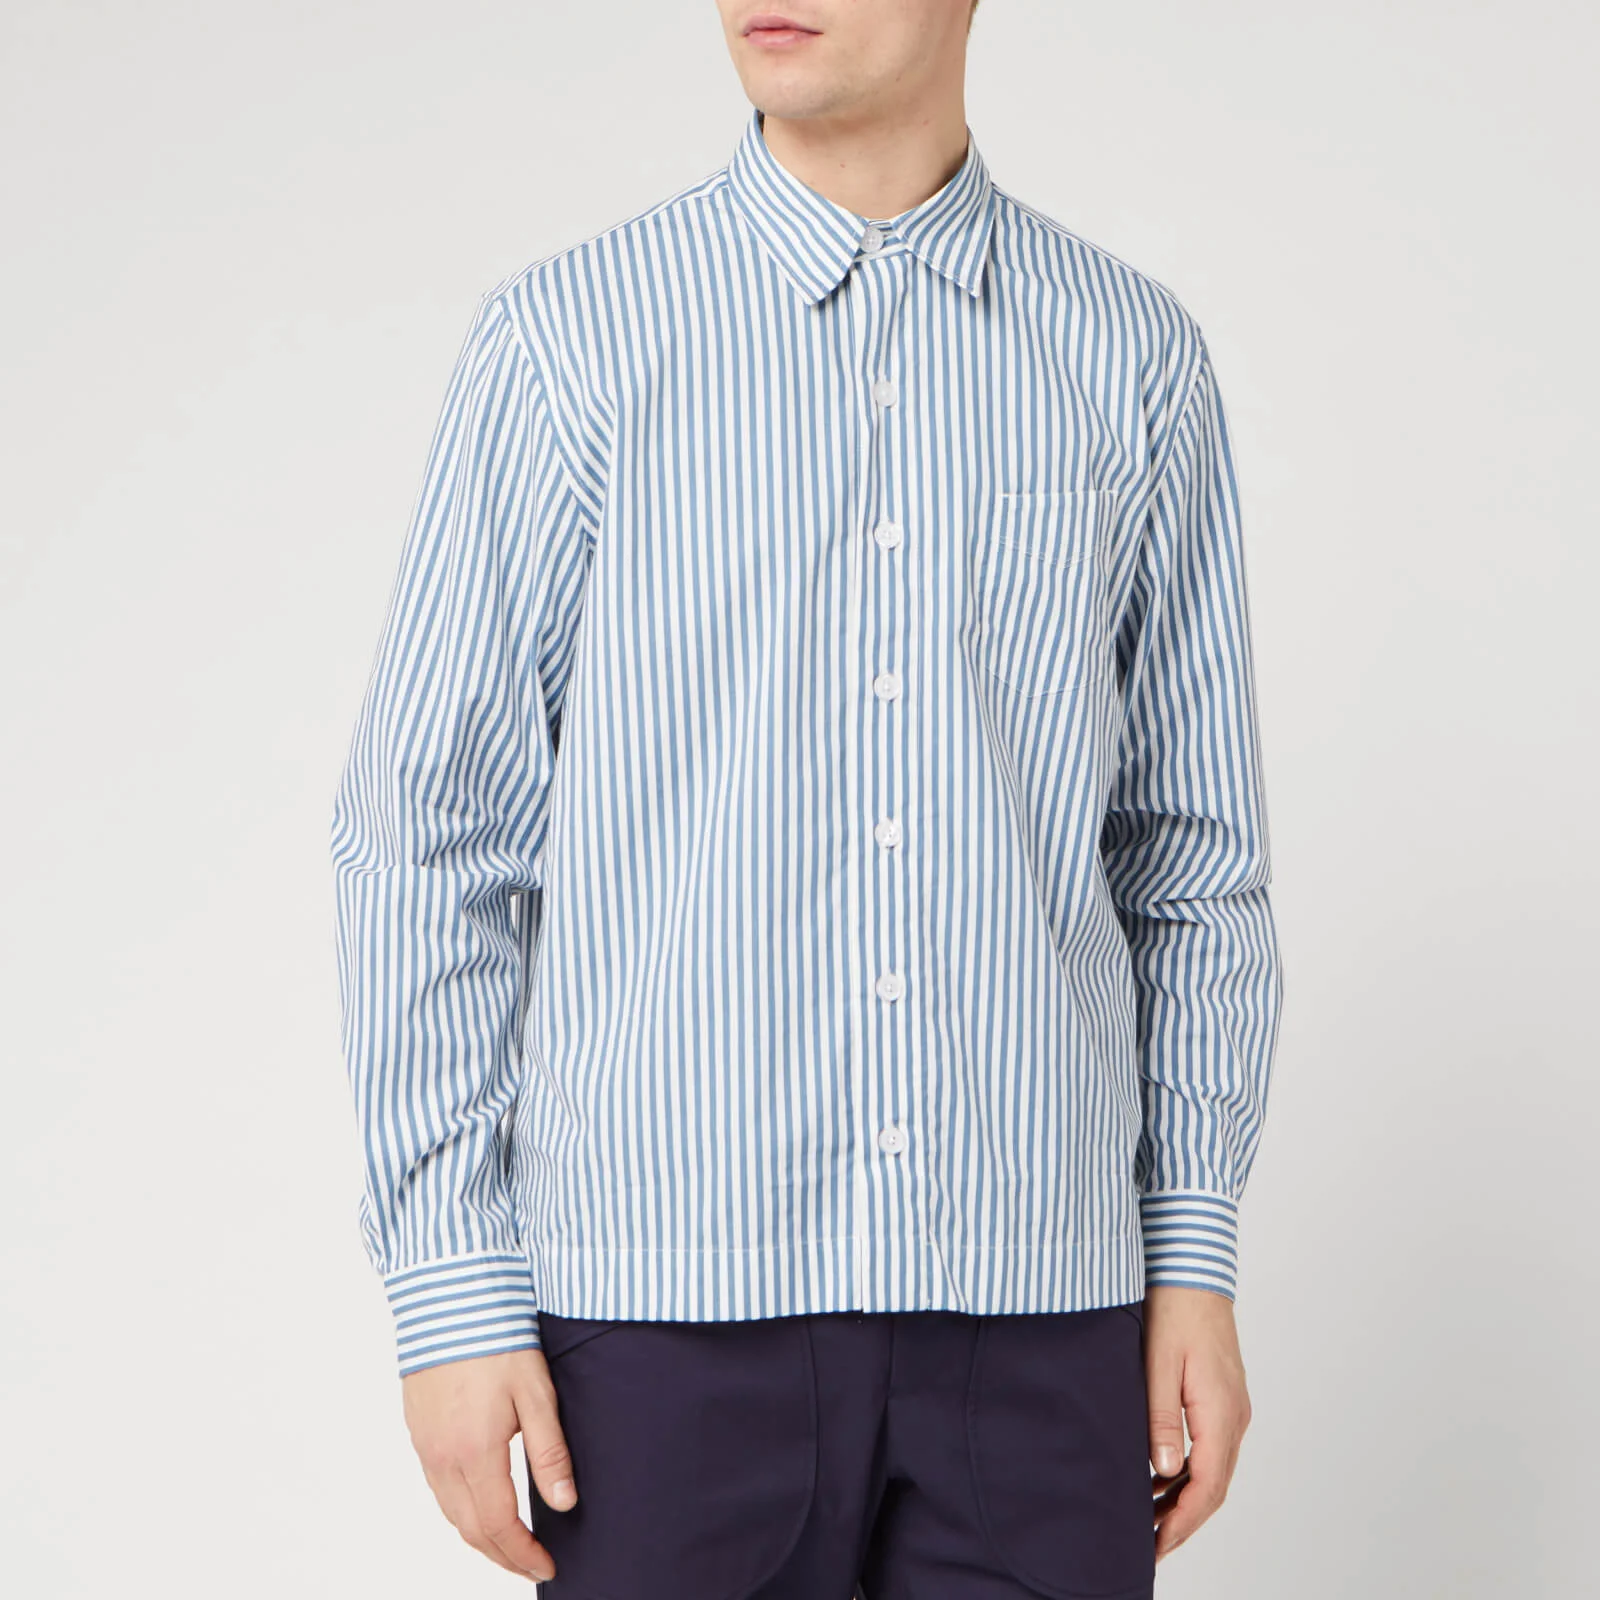 Officine Générale Men's Bob Candy Stripe Shirt - White/Blue Image 1